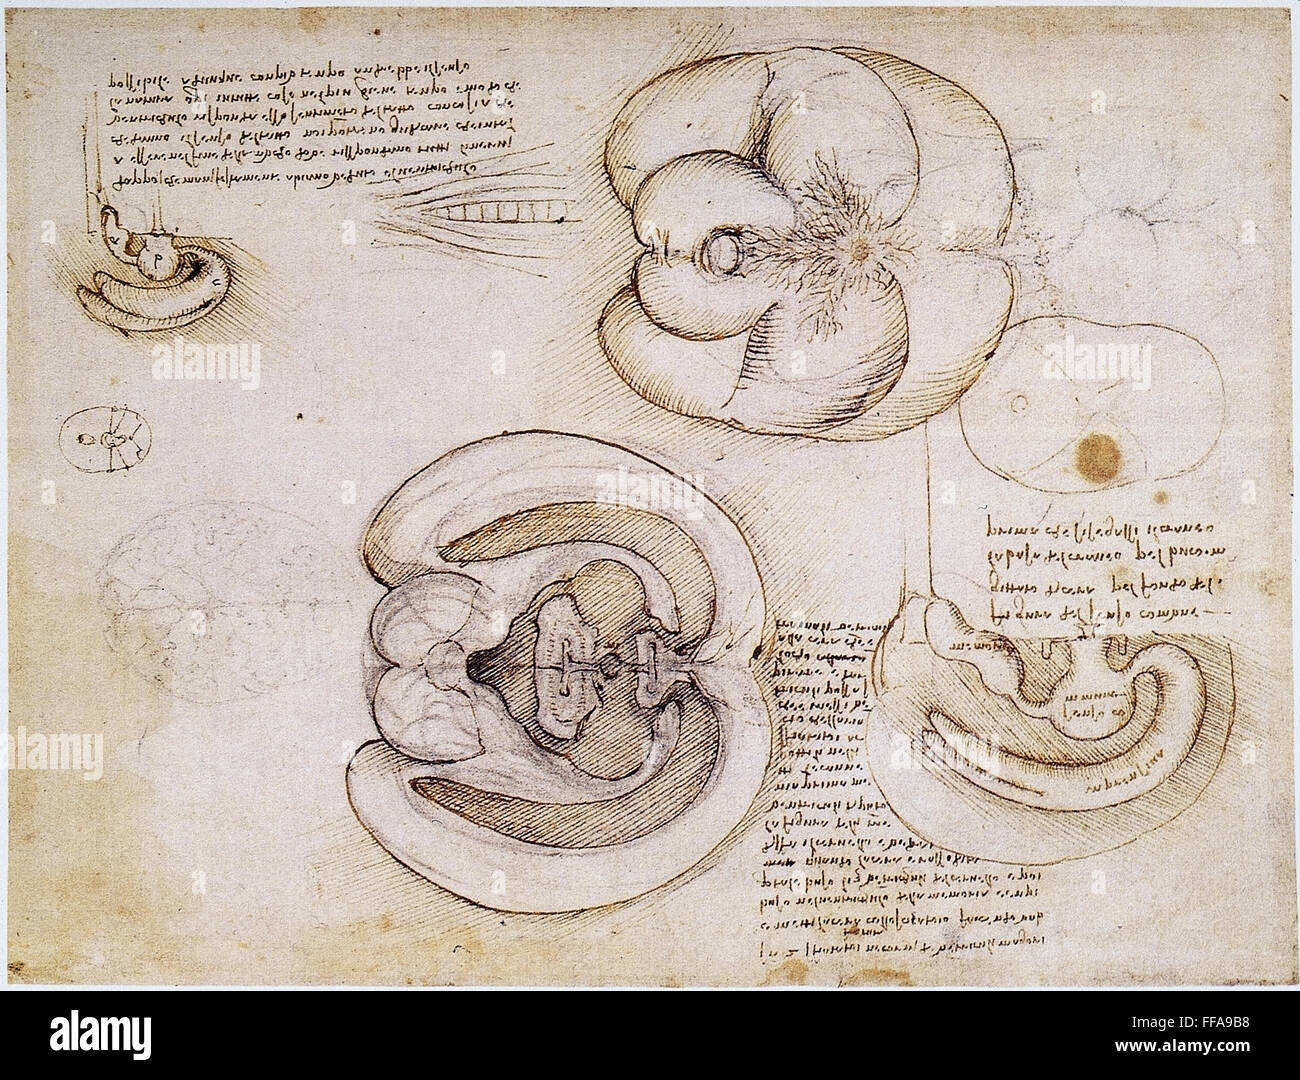 LEONARDO: ventricoli, c1508. /NPen e disegno a inchiostro, c1508, da Leonardo da Vinci degli emisferi cerebrali e dei ventricoli. Foto Stock